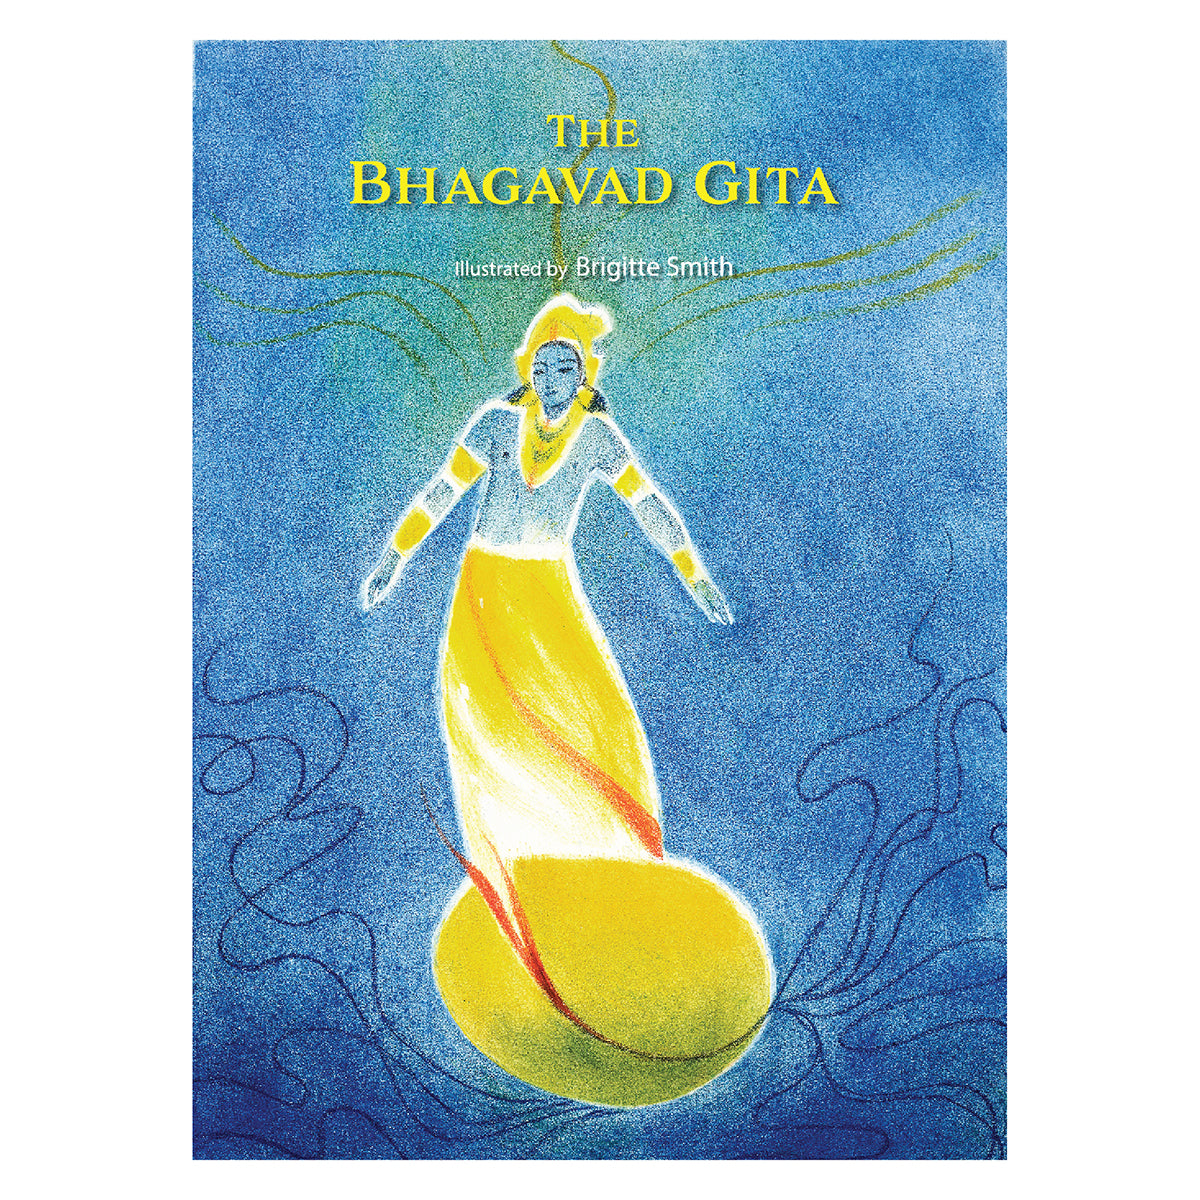 The Bhagavad Gita by Brigitte Smith - hfnl!fe